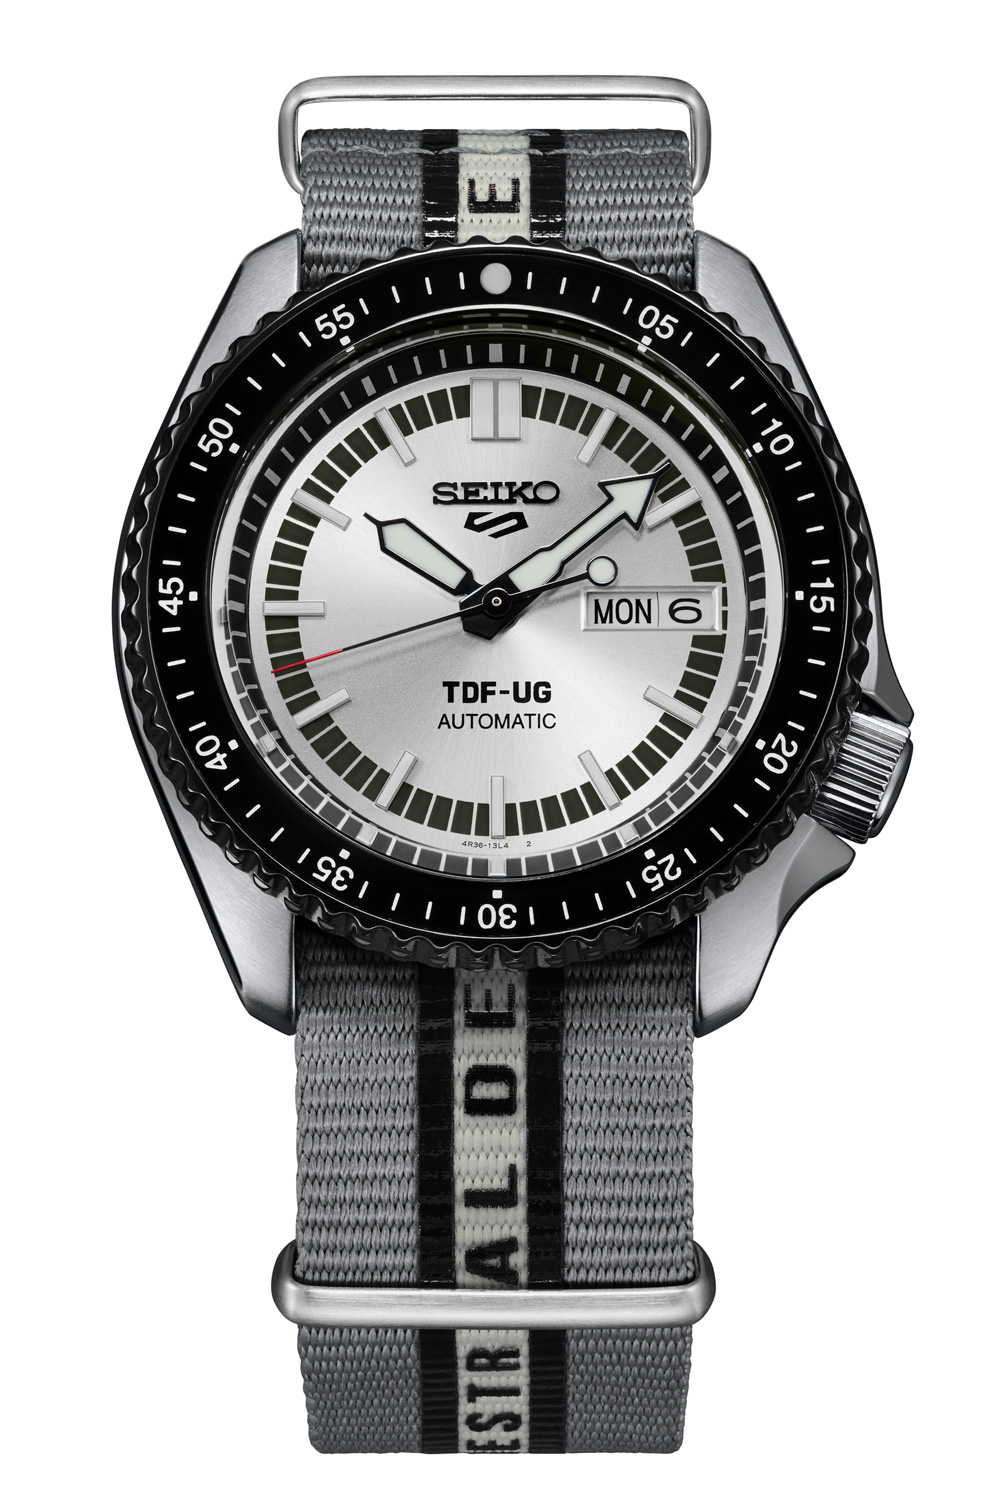 ウルトラセブン55周年コラボモデルの腕時計「セイコー 5スポーツ」が ...